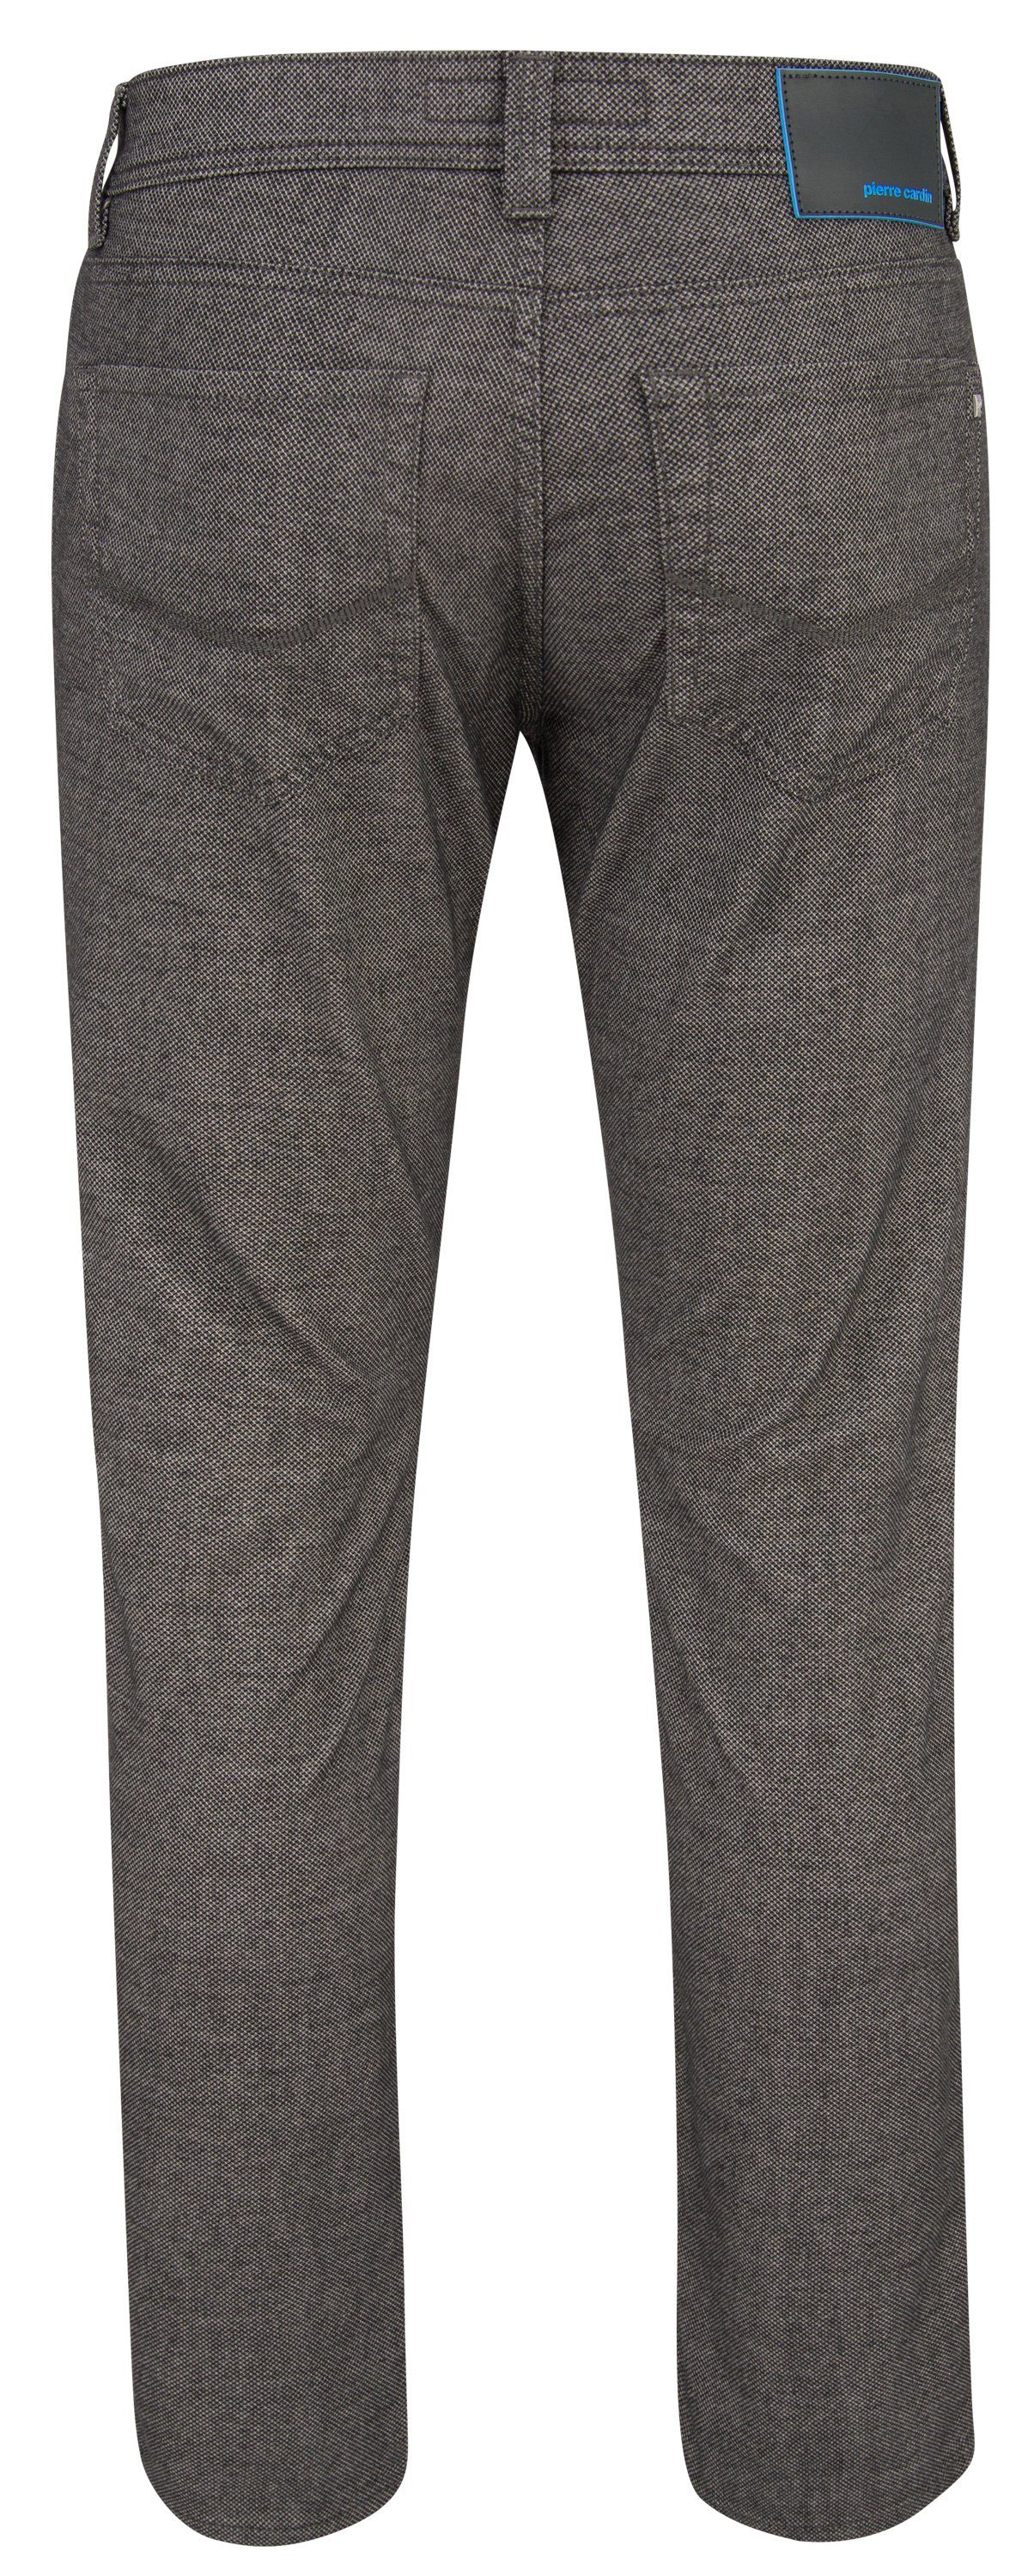 Pierre Cardin 5-Pocket-Jeans LYON grey 3451 FUTUREFLEX structured PIERRE CARDIN 4790.82